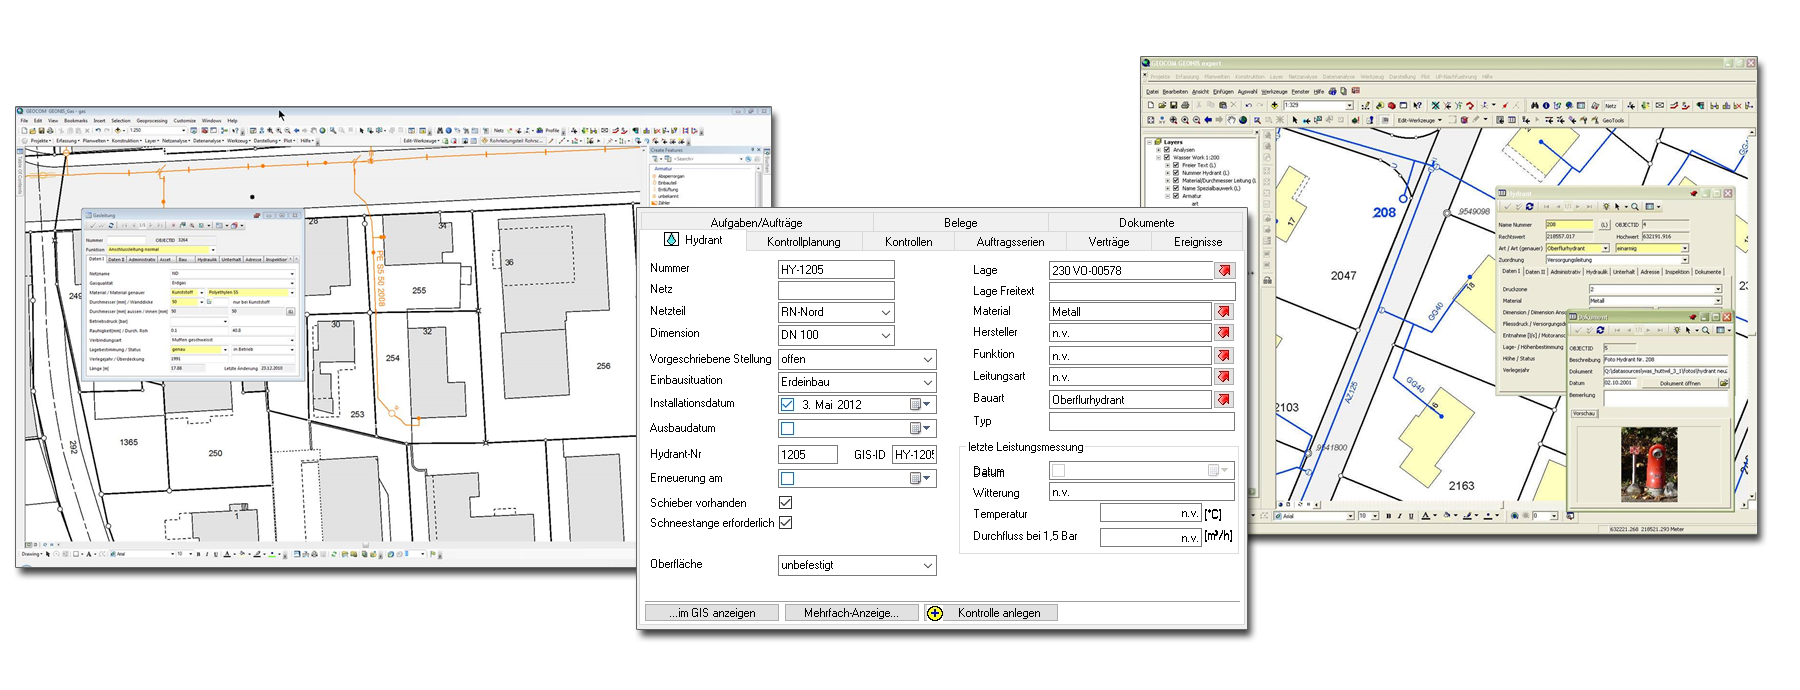 GIS Software für Netzinformationssysteme von TOL - komplettes Prozessmanagement mit den CAFM Modulen